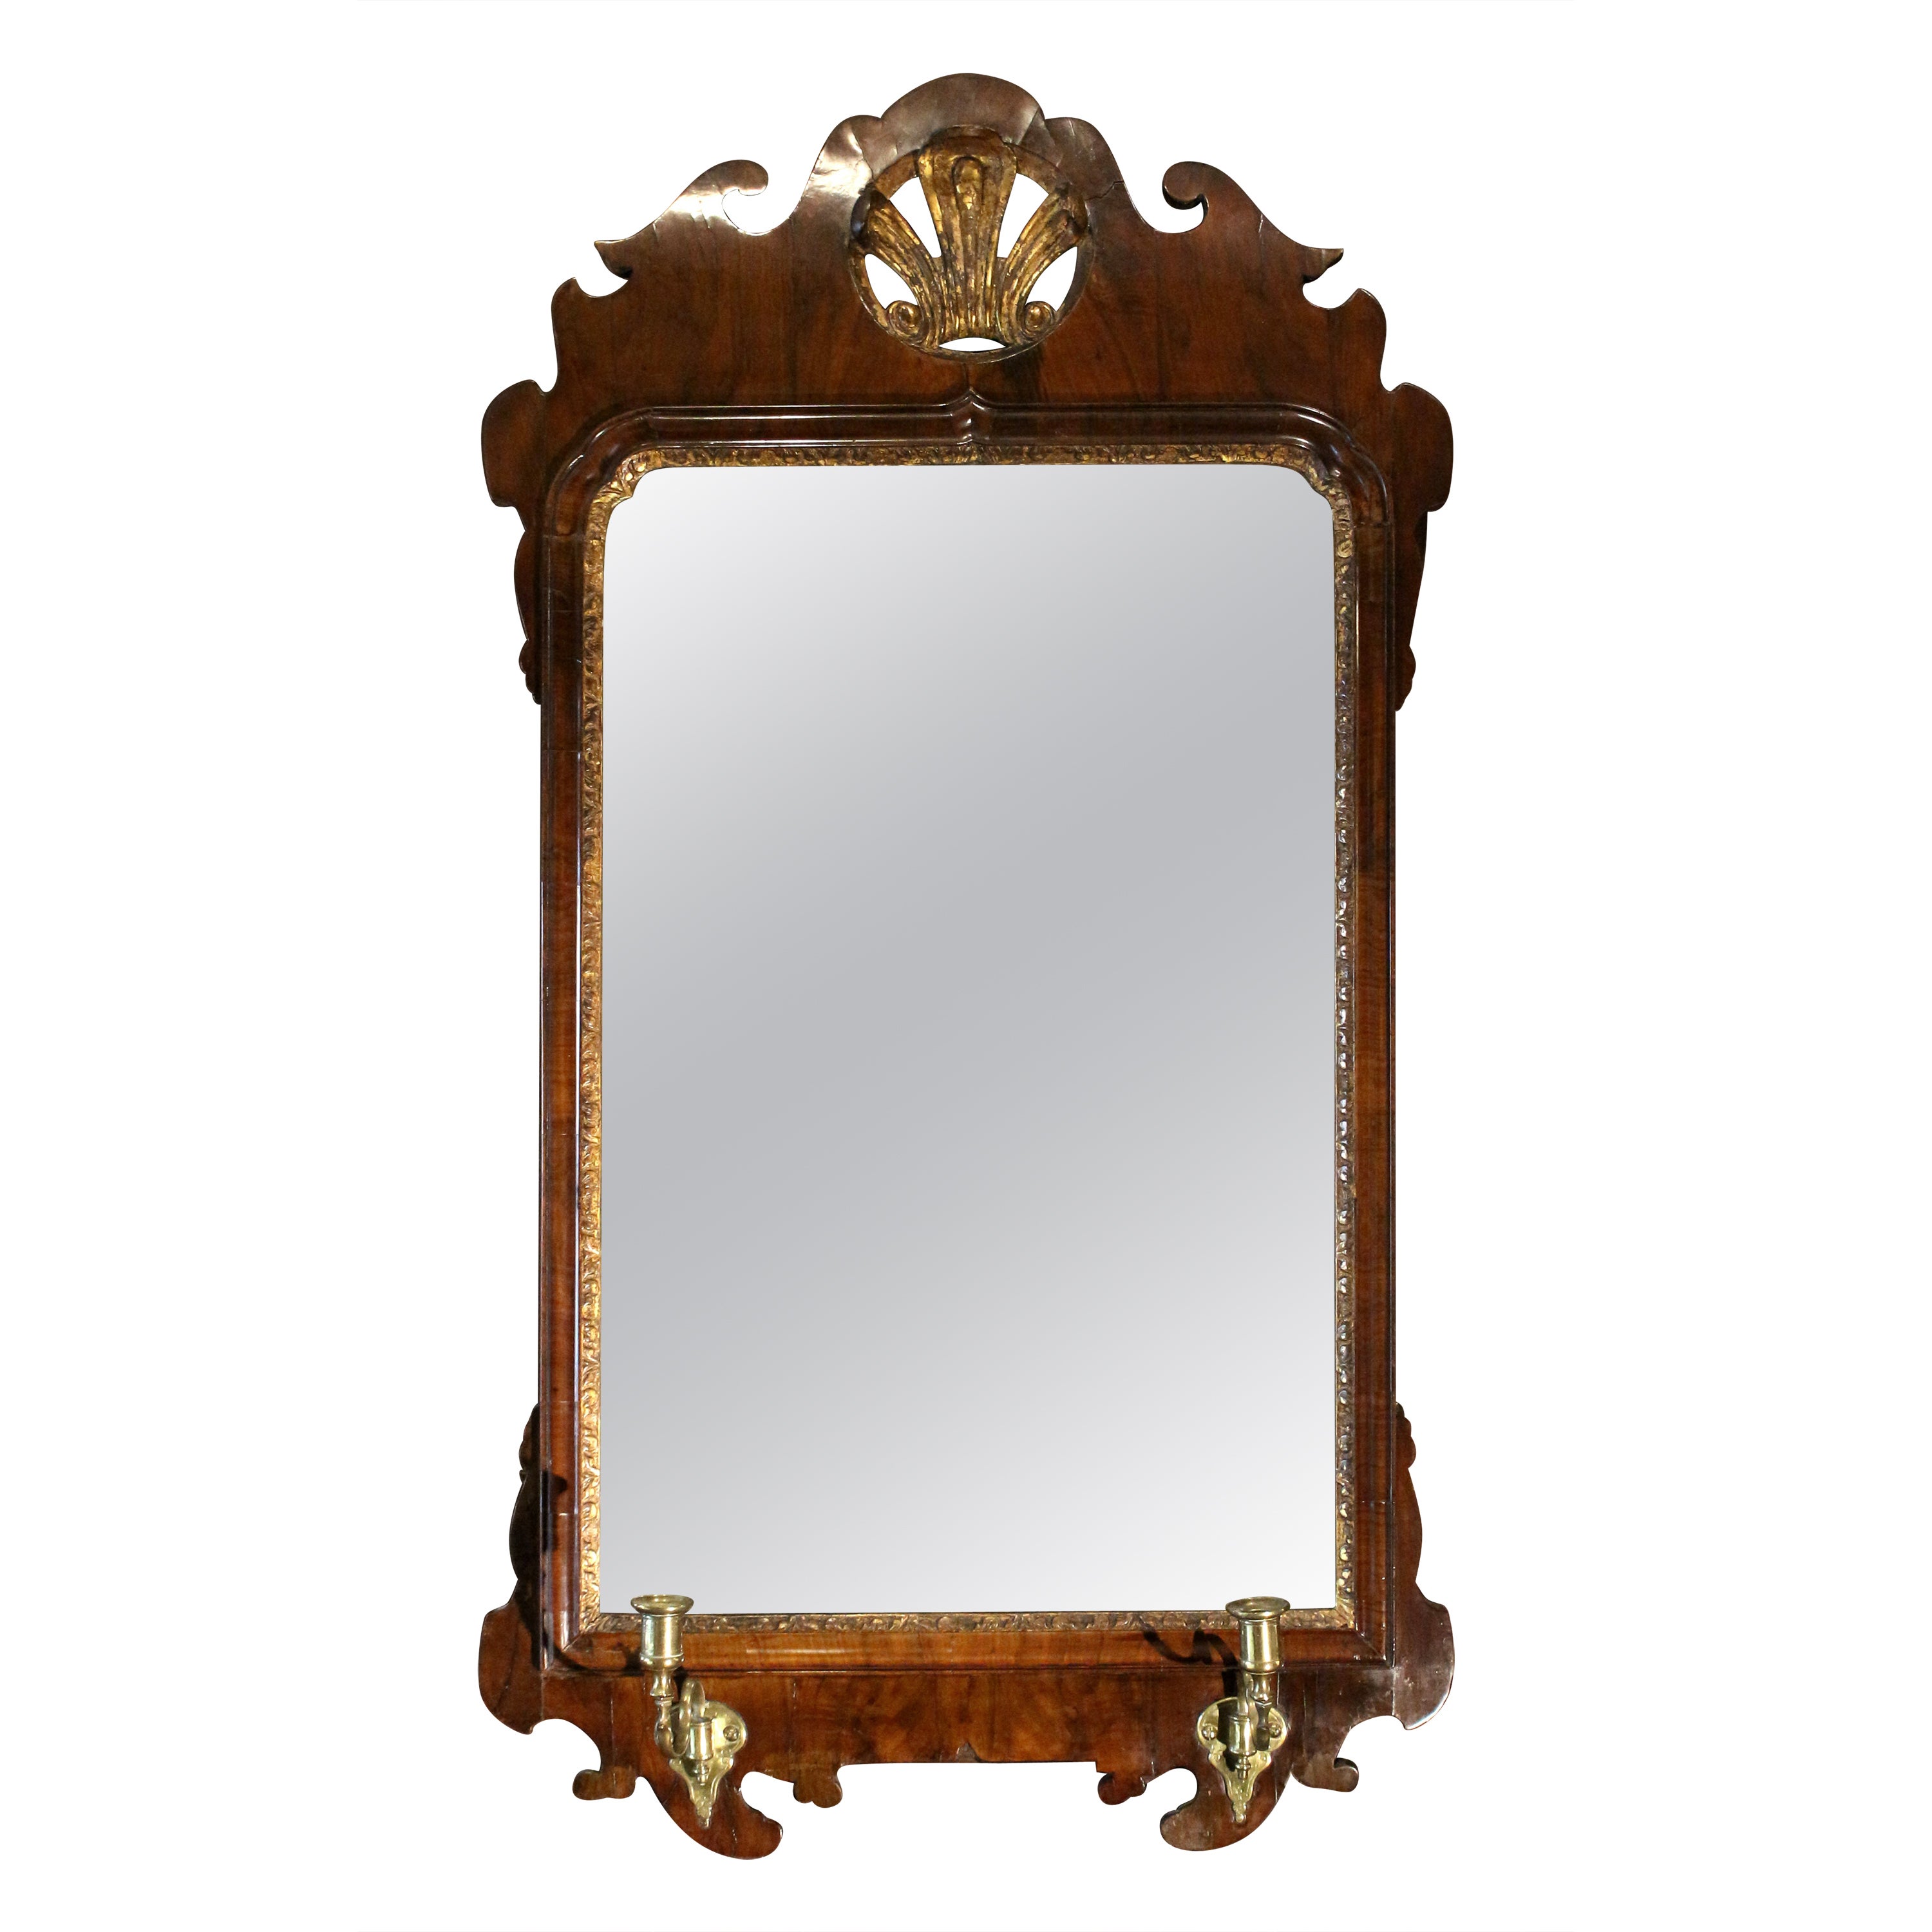 Circa 1730-50 George II Period English Girondole Mirror For Sale